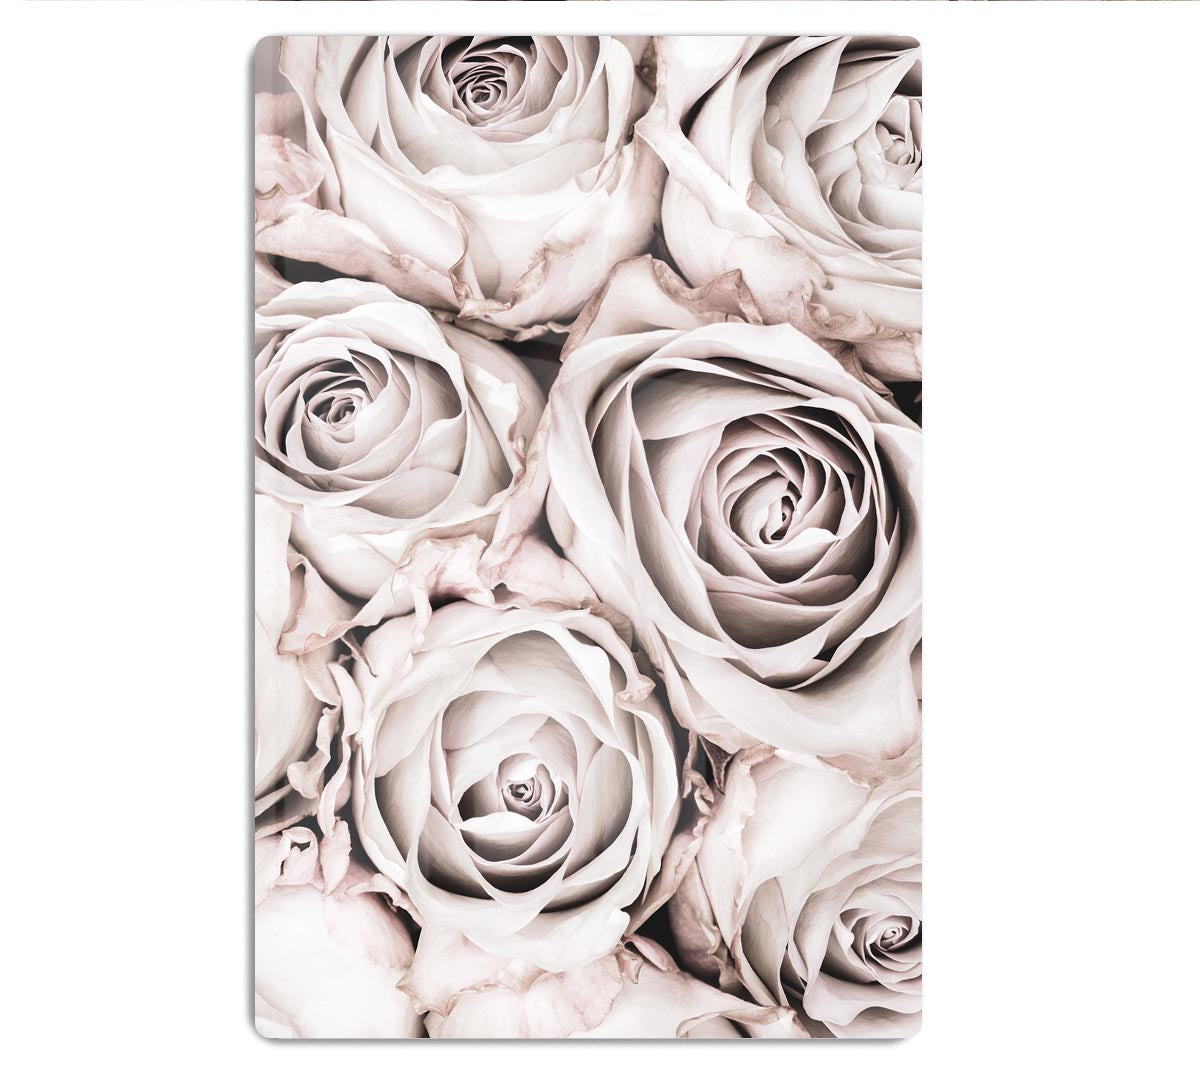 Grey Roses No 01 HD Metal Print - Canvas Art Rocks - 1